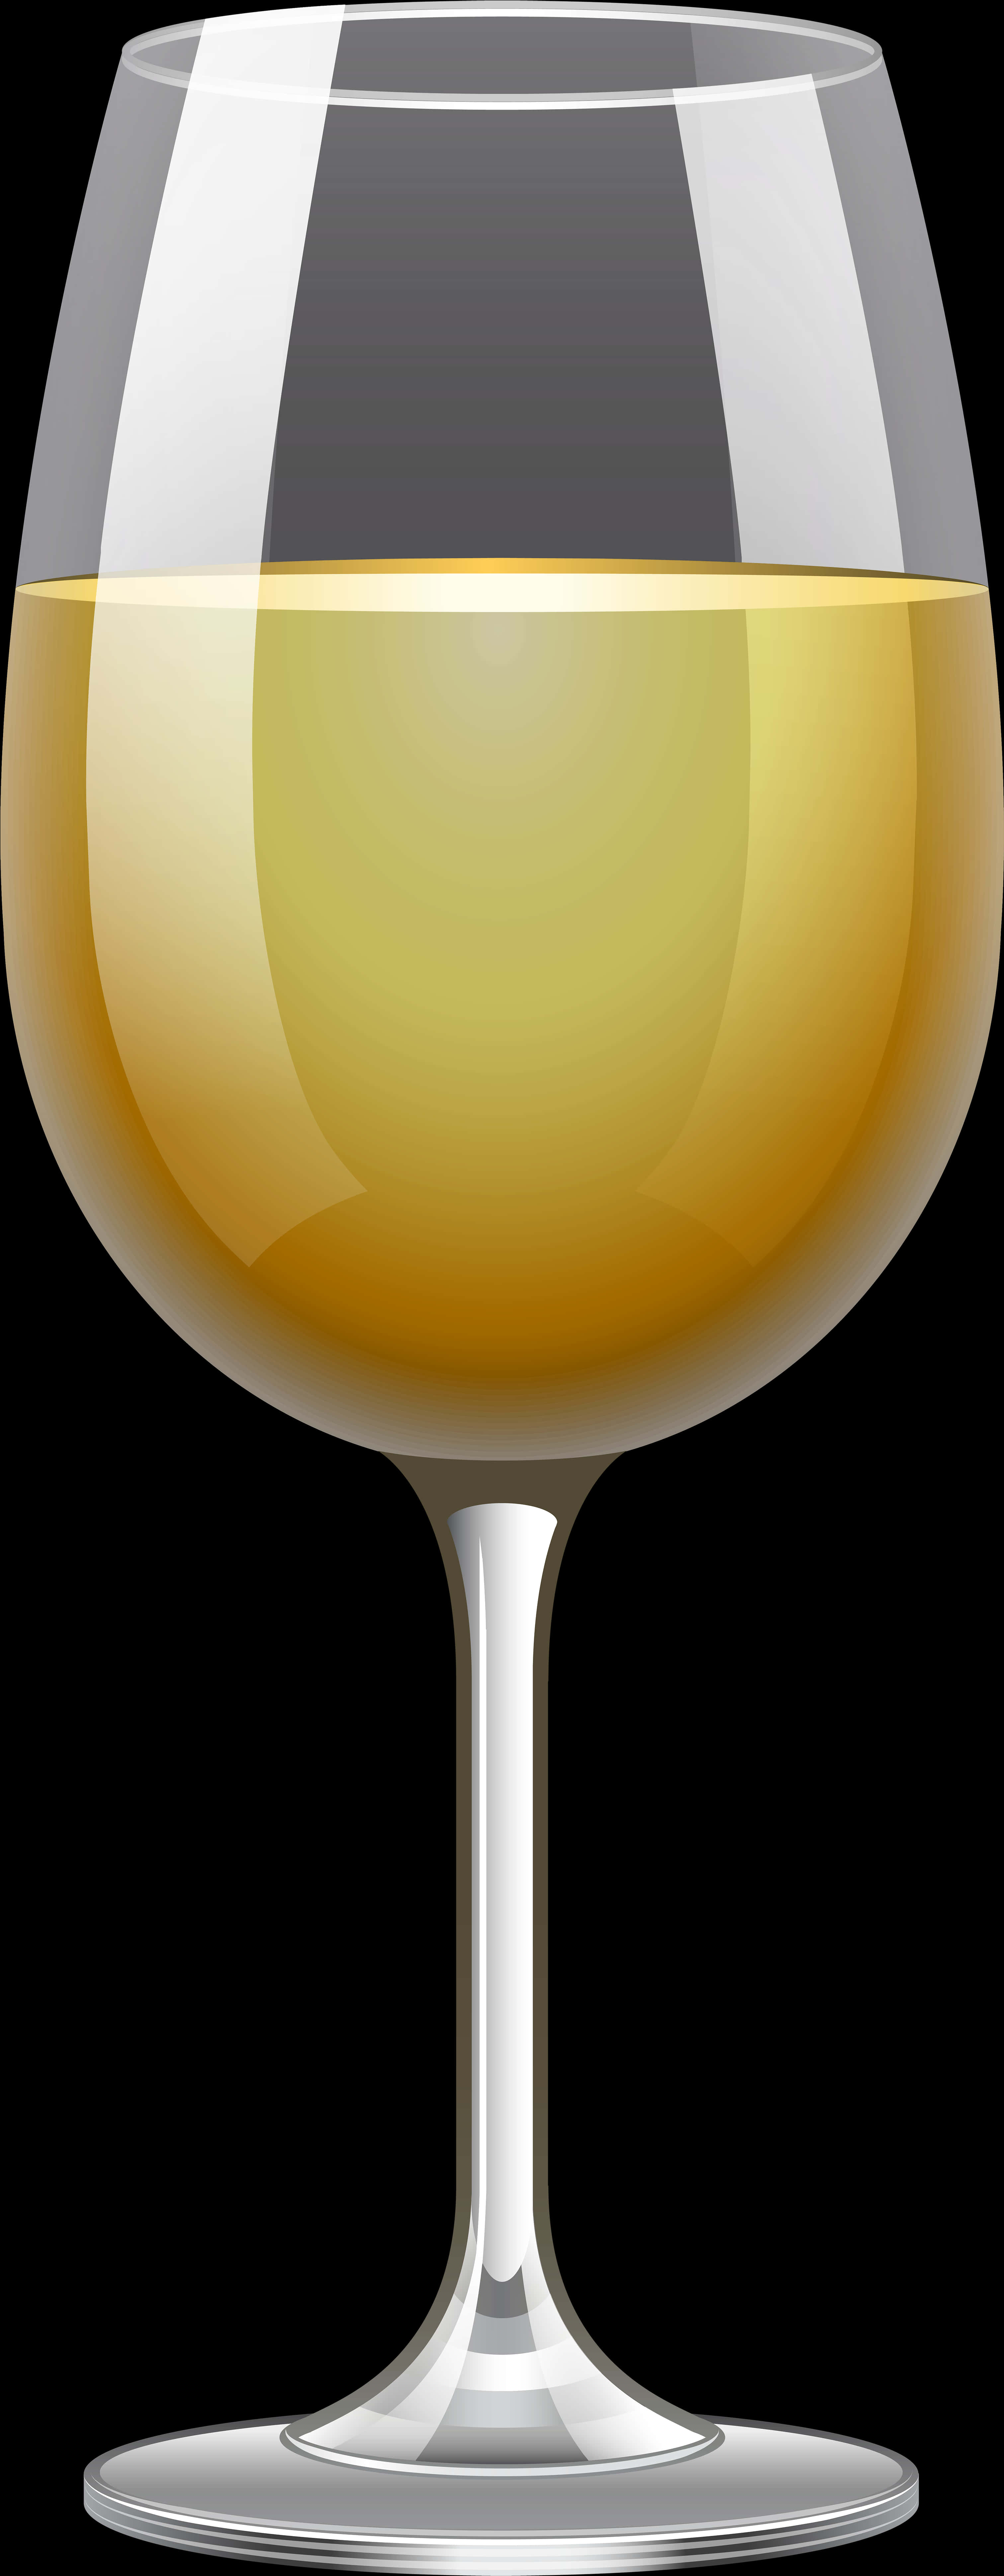 White Wine Glass Vector Illustration.jpg PNG